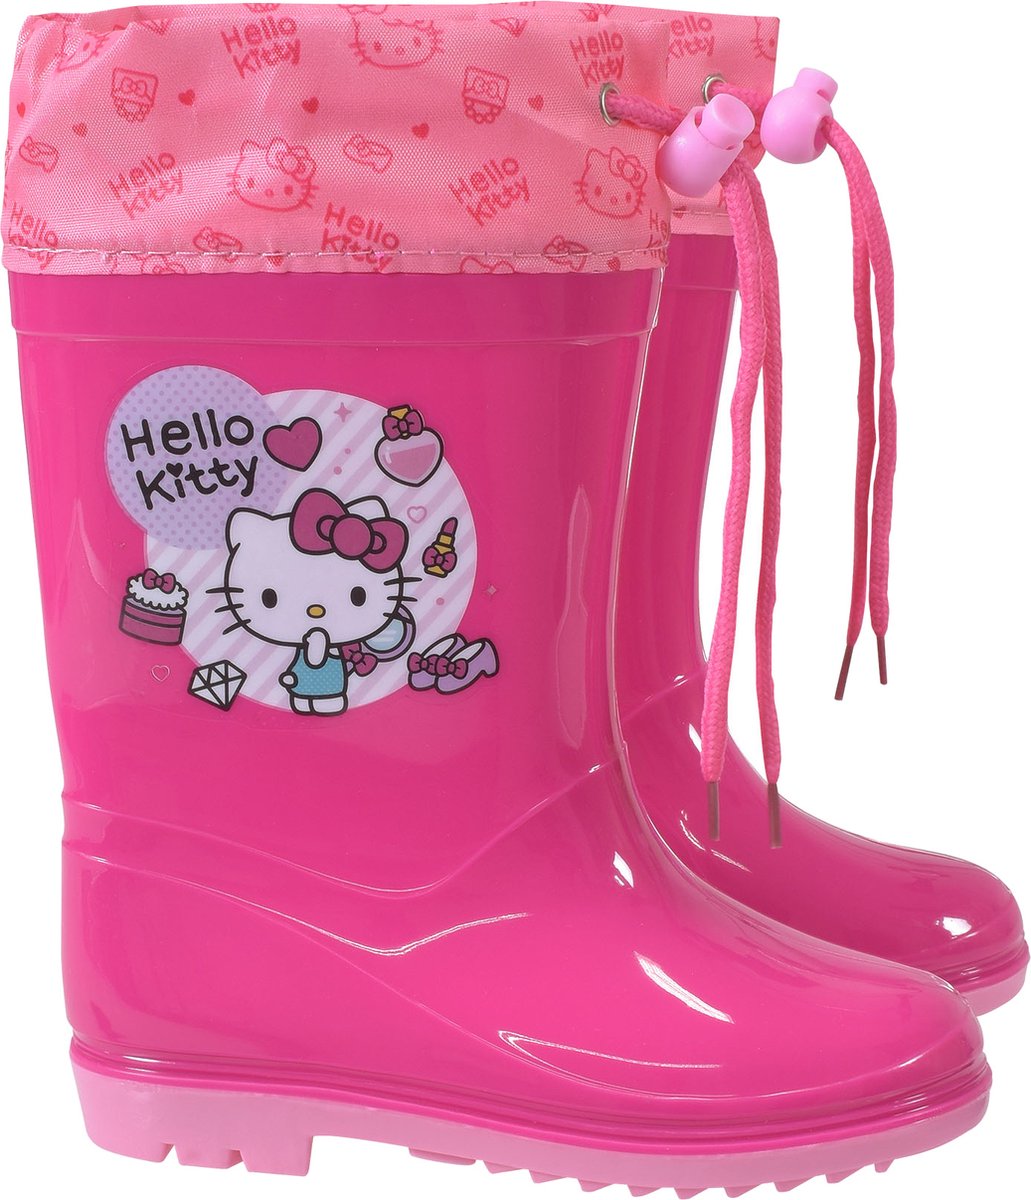 Stamion Regenlaarzen Hello Kitty meisjes Pvc Roze/paars Maat 24-25